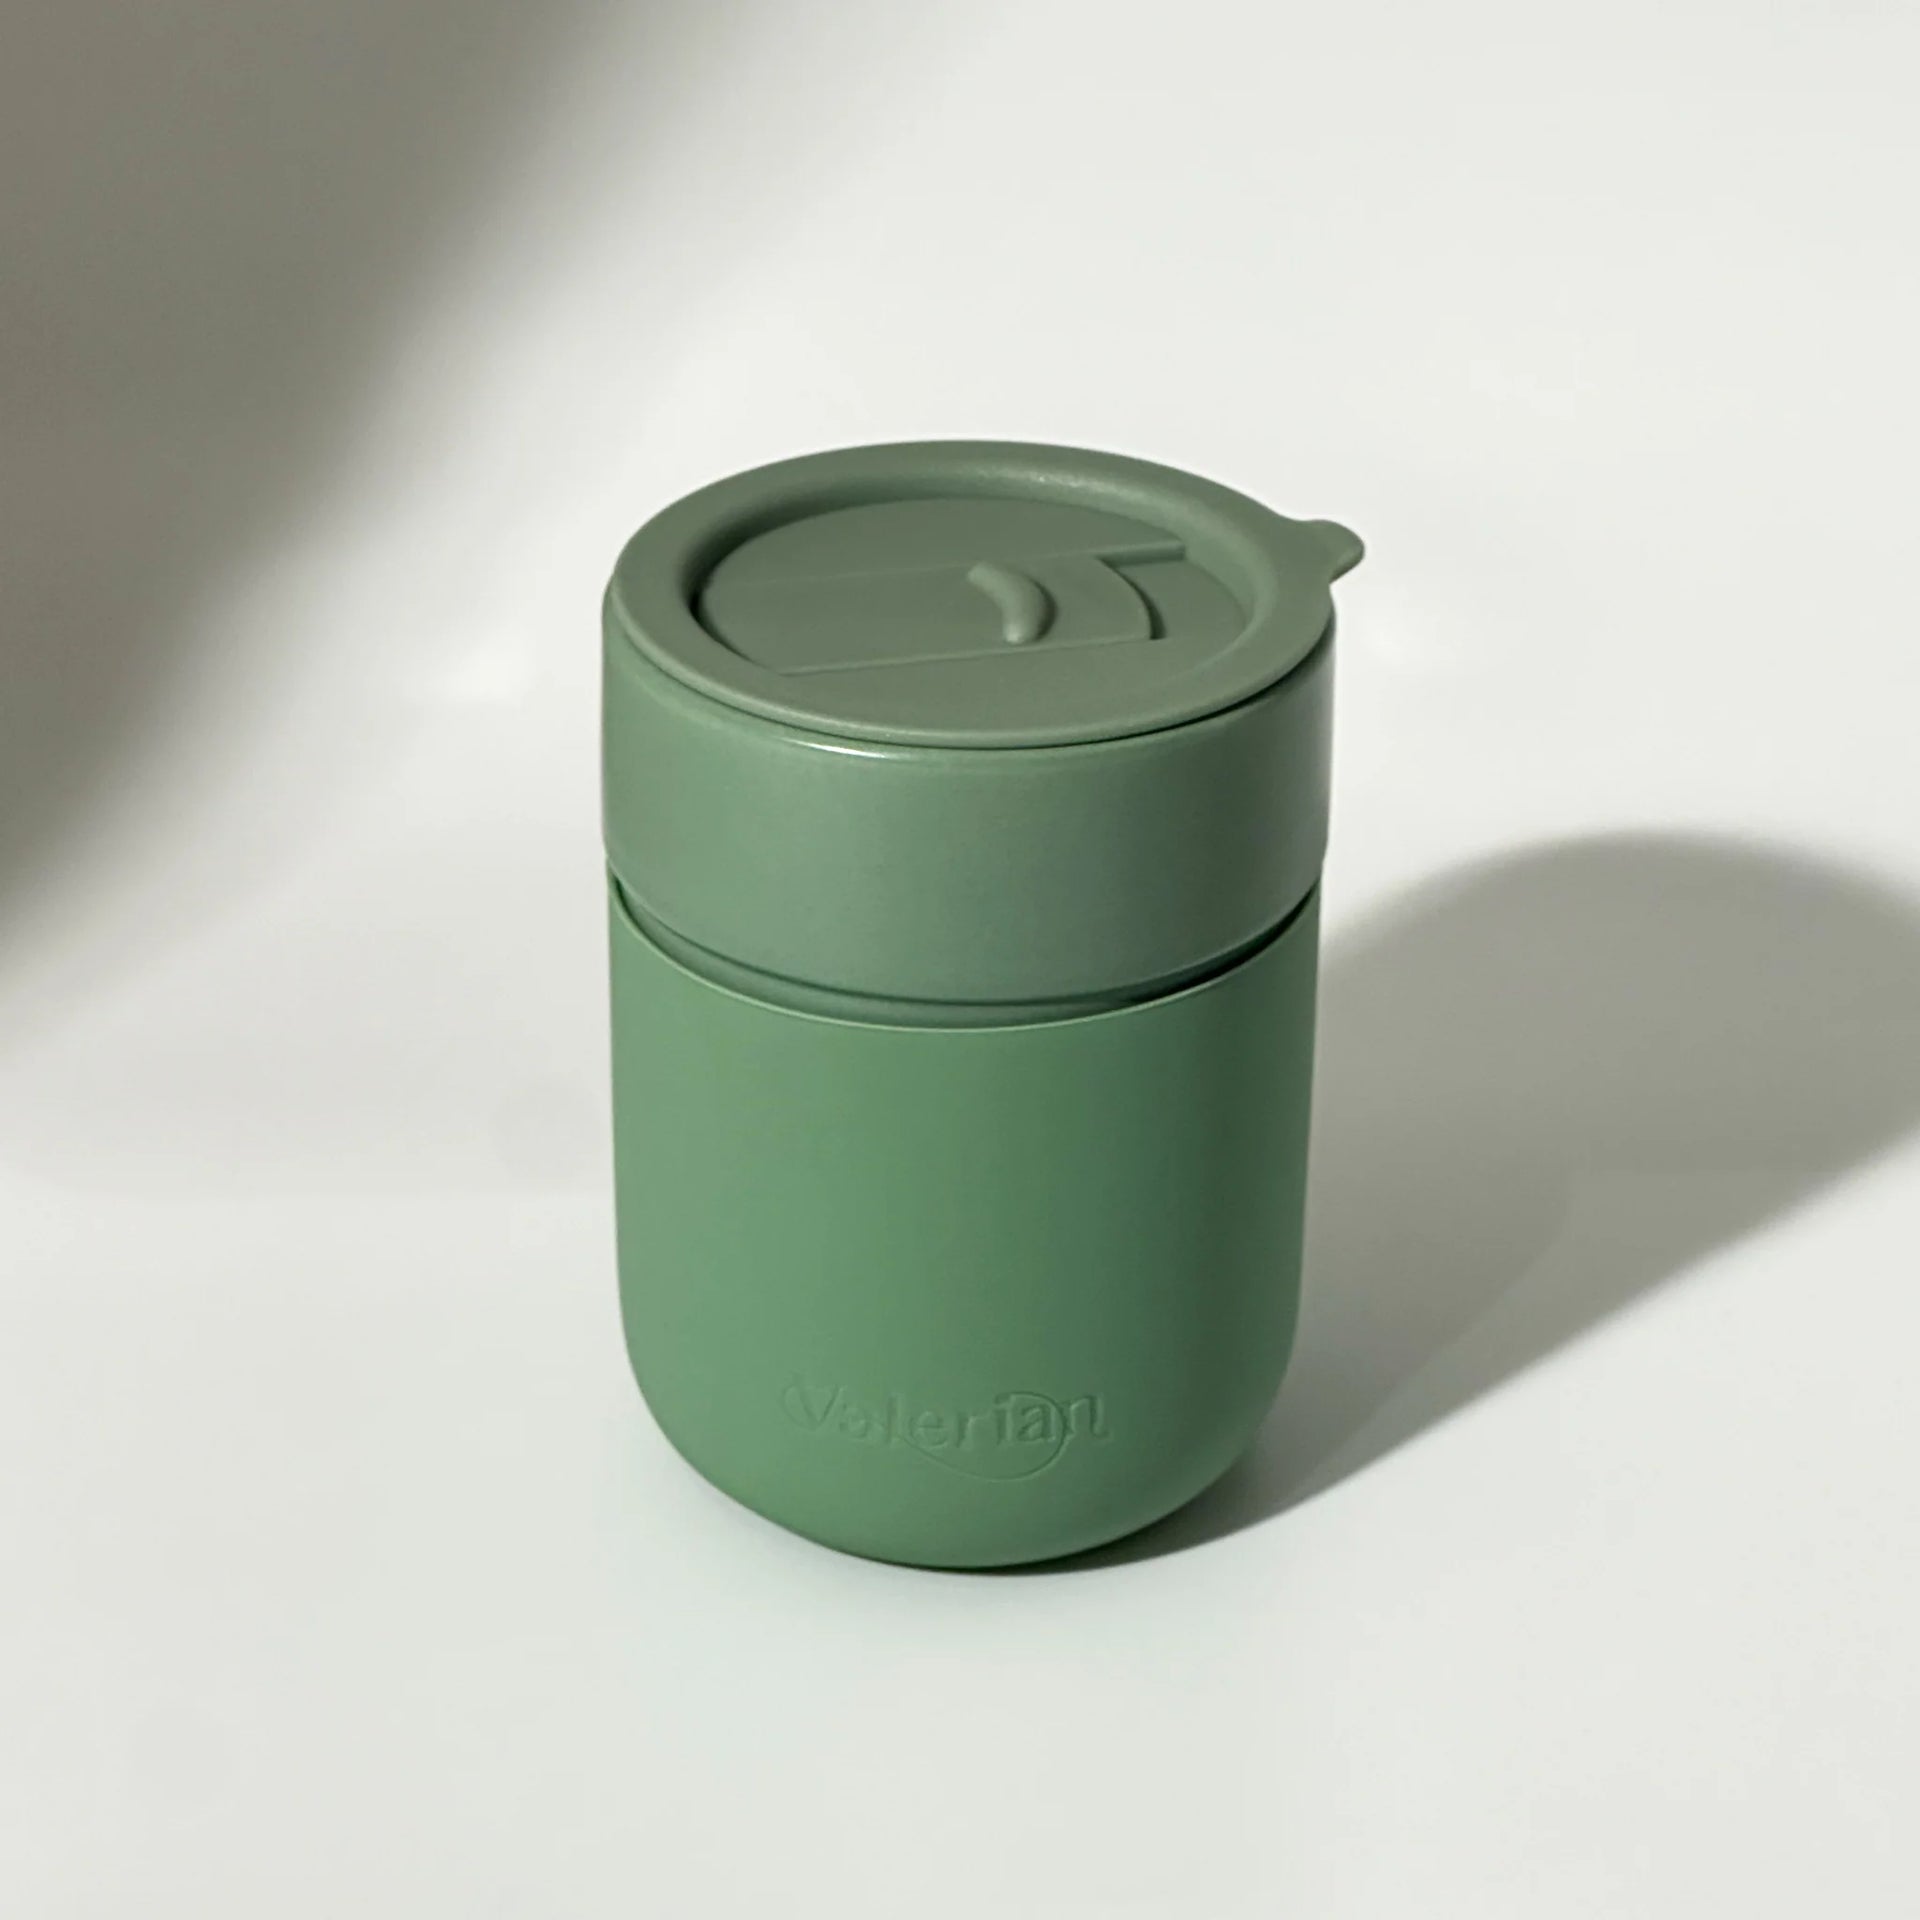 Valerian-Ceramic mug(Green)